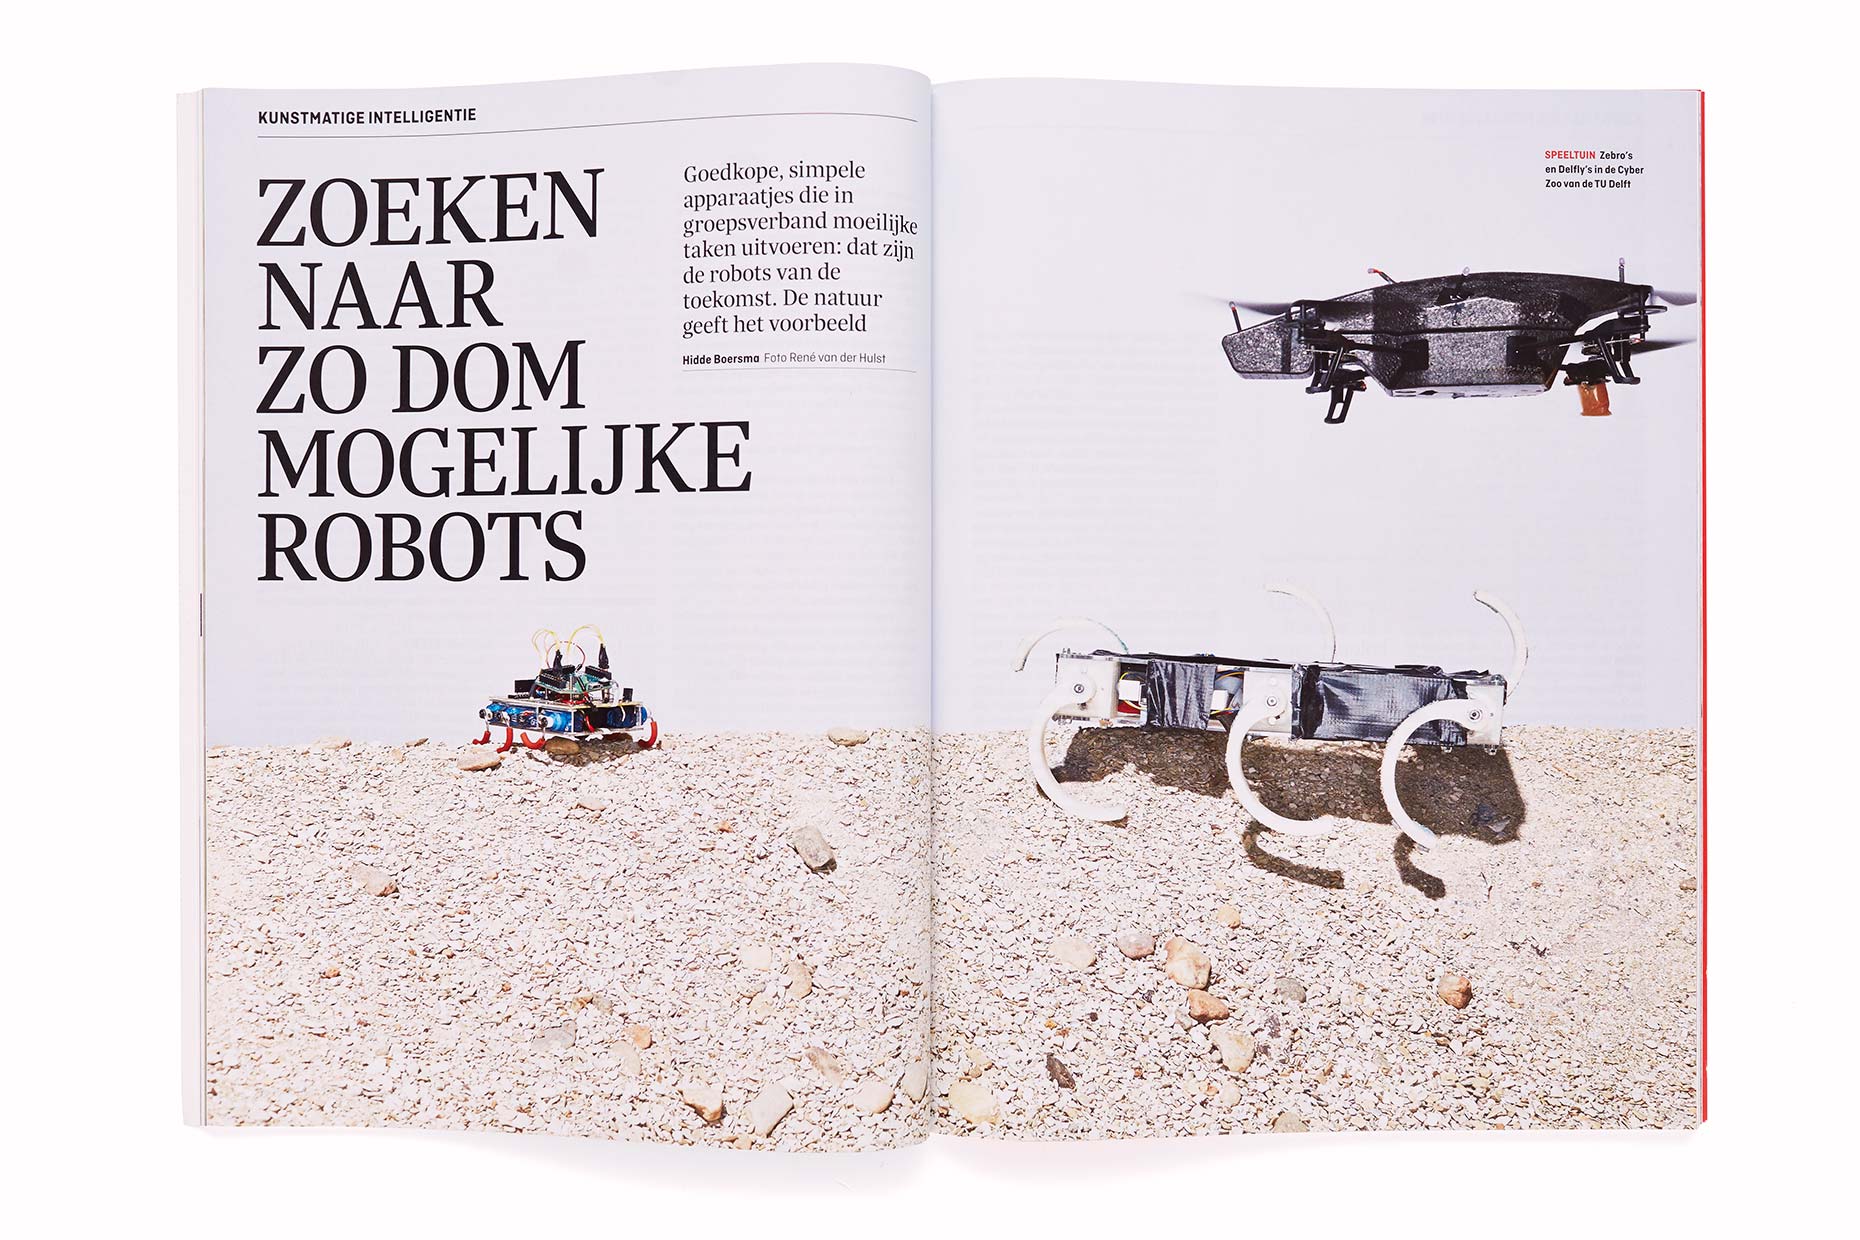 Repro-eigen-werk-jan2015-105-Robotzoo